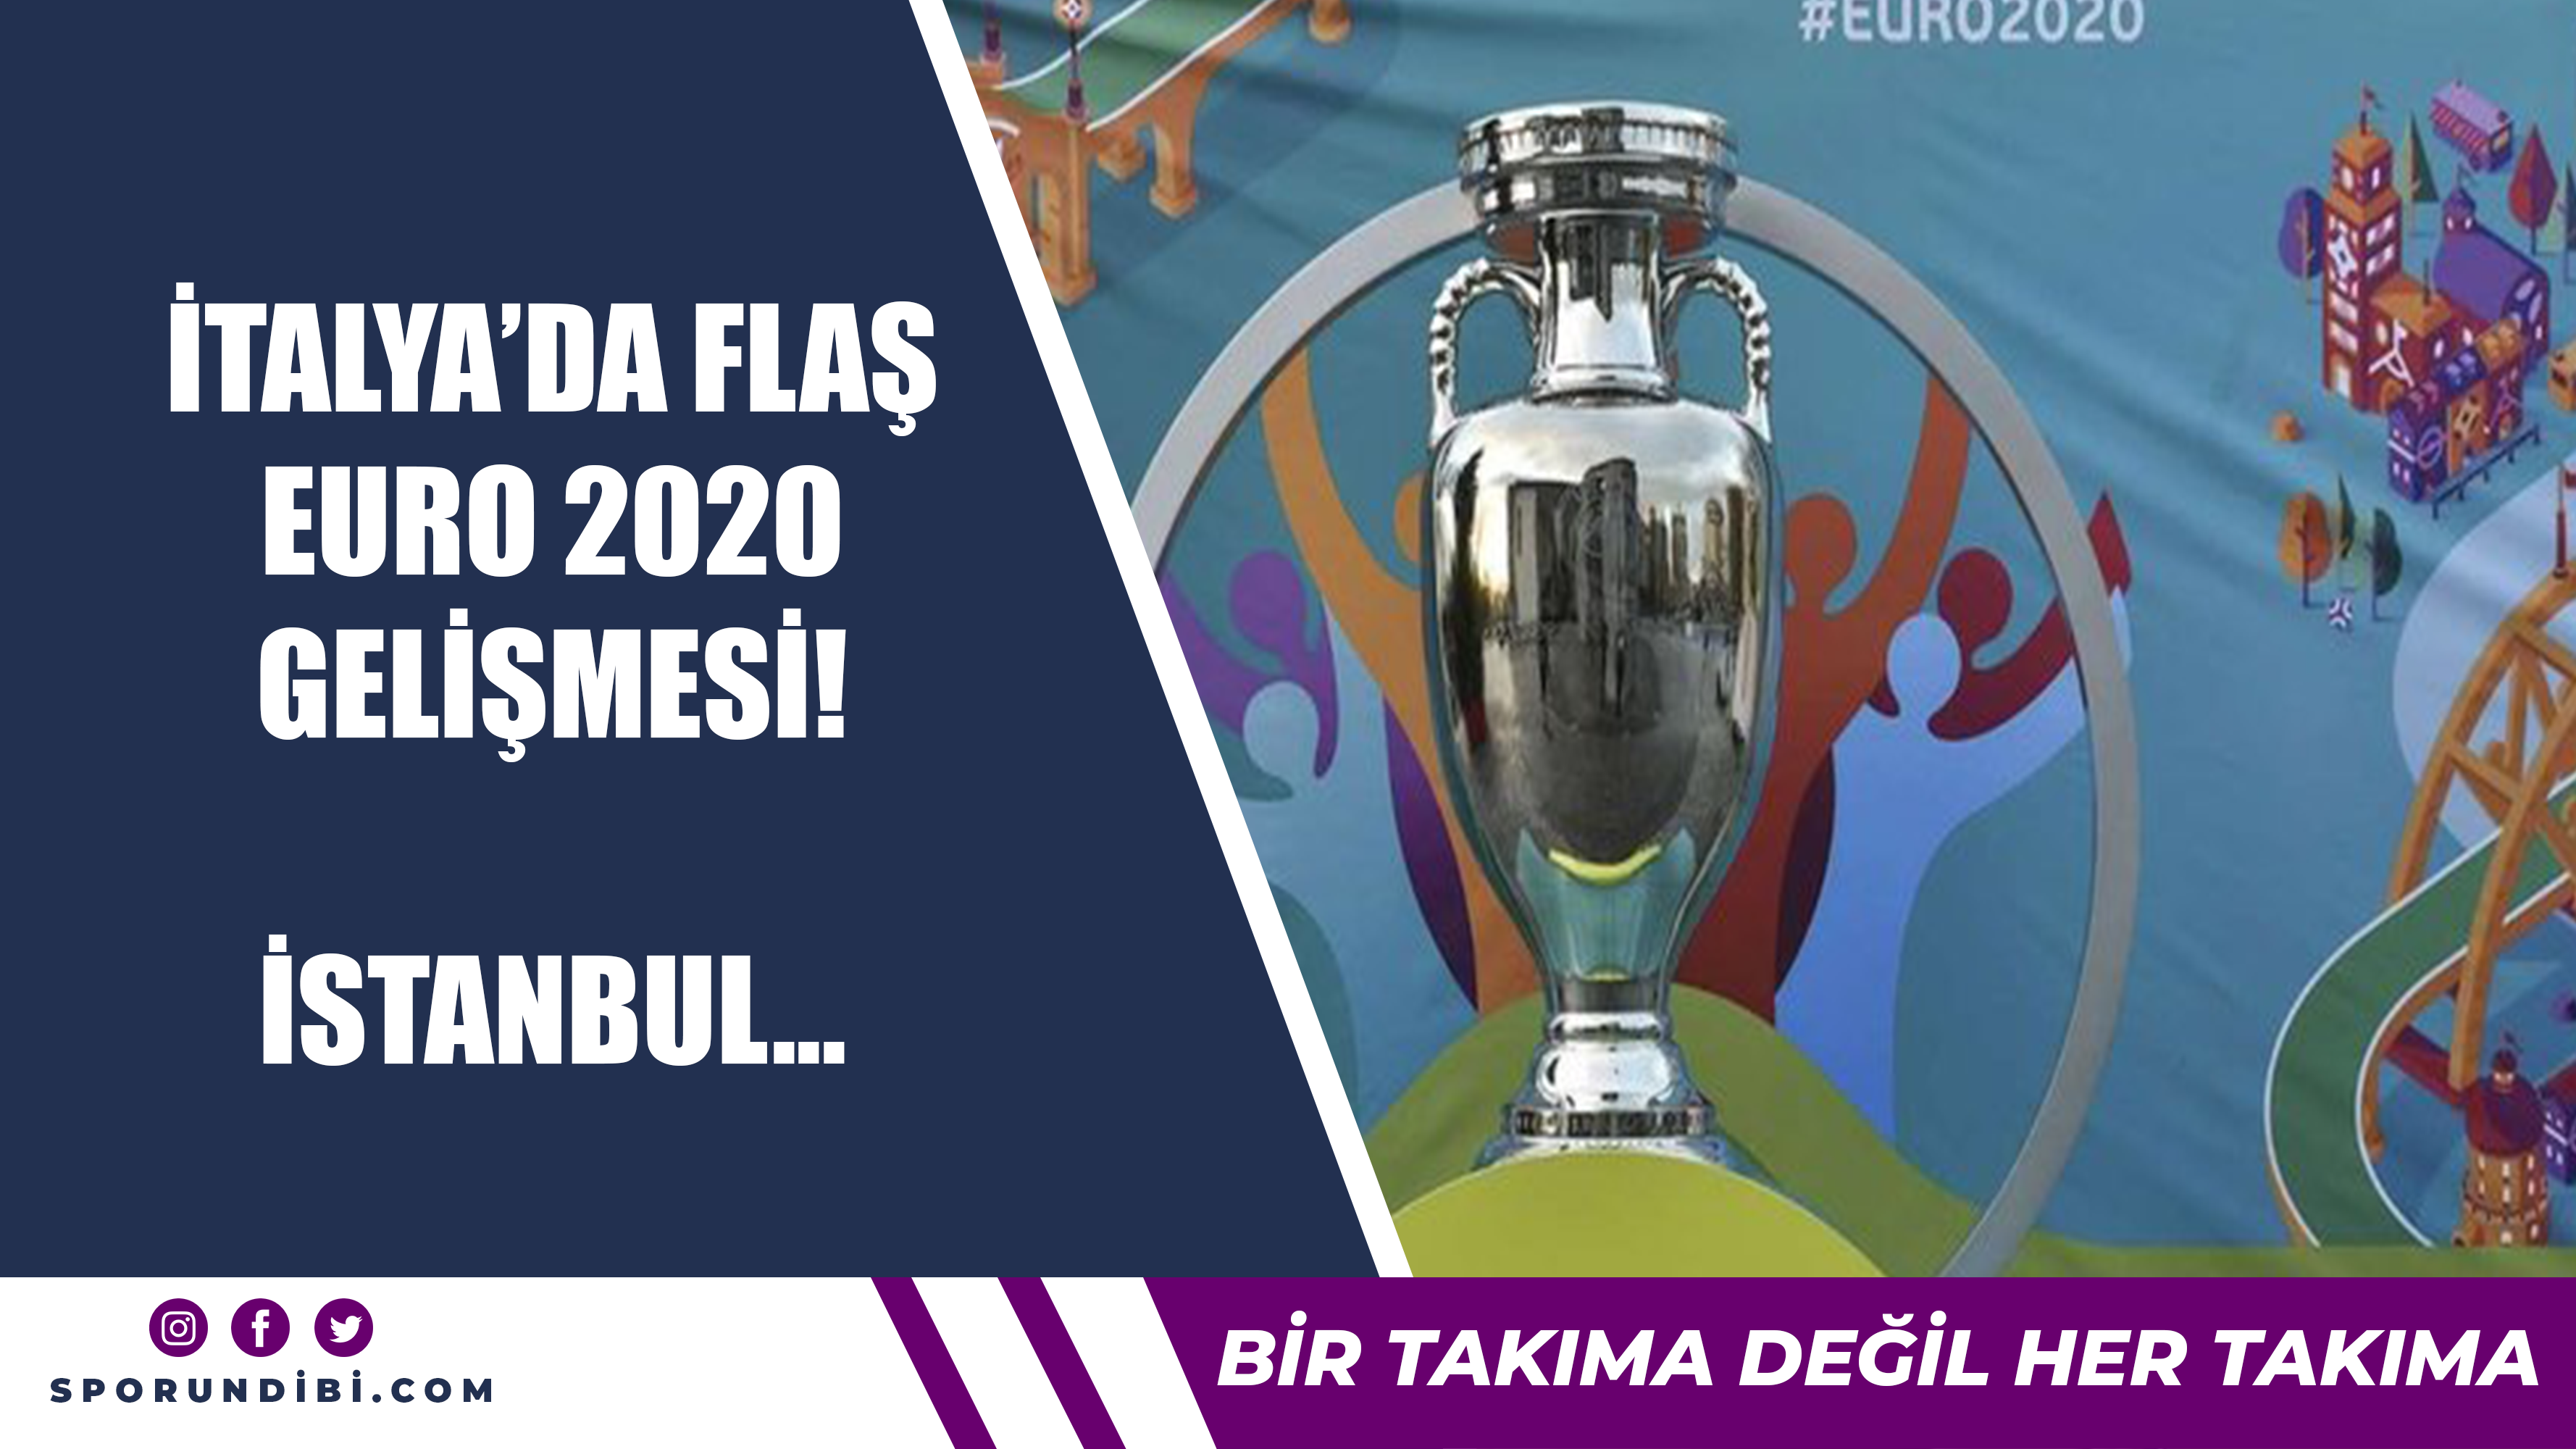 İtalya'da flaş EURO 2020 gelişmesi! İstanbul...